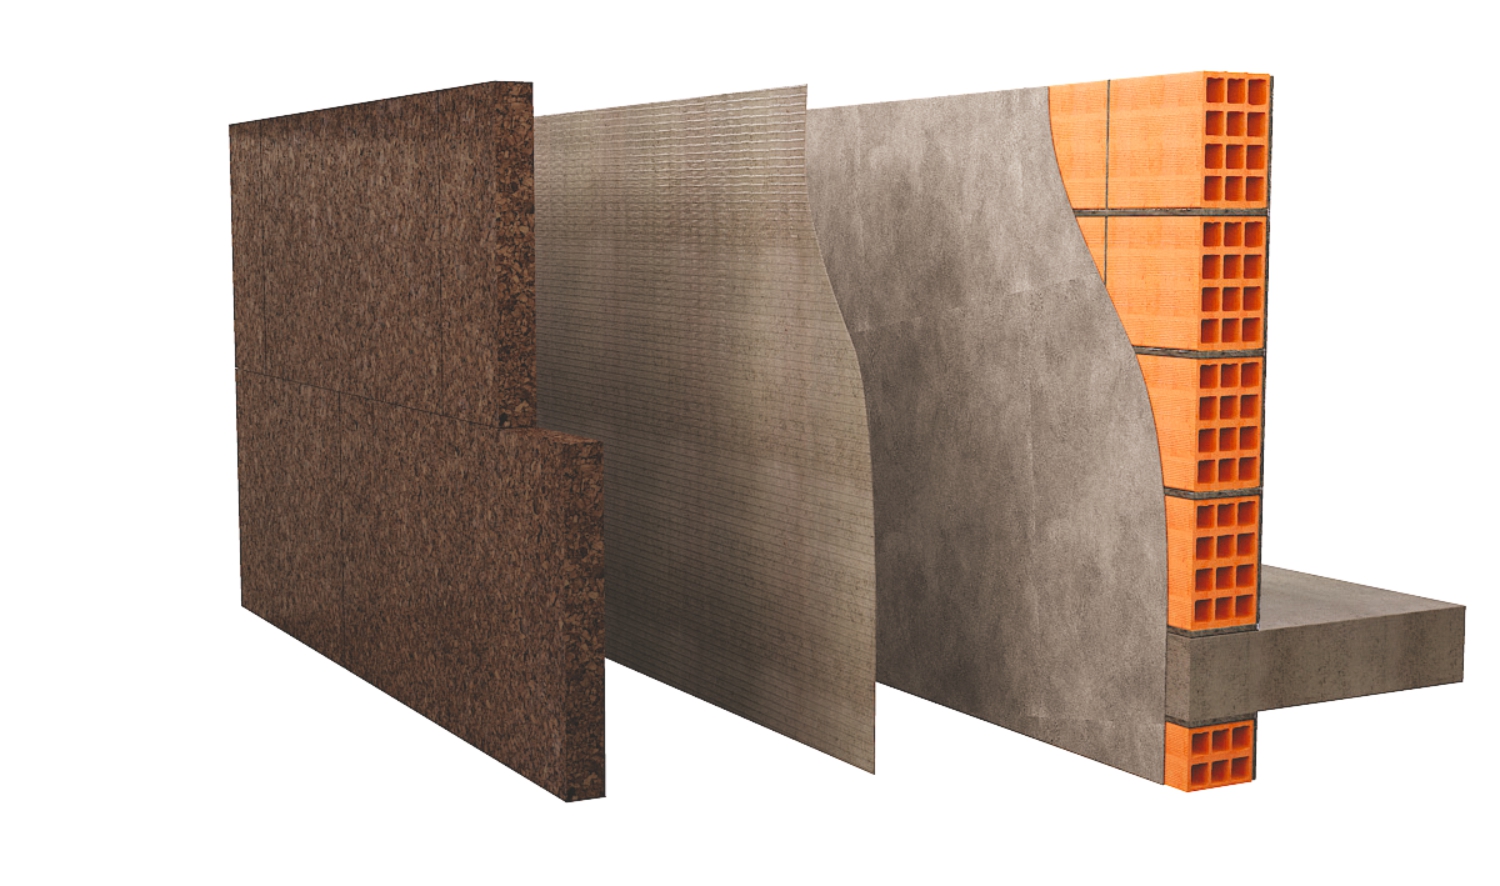 Isolamento termico delle pareti: tipologie, vantaggi e svantaggi - BibLus